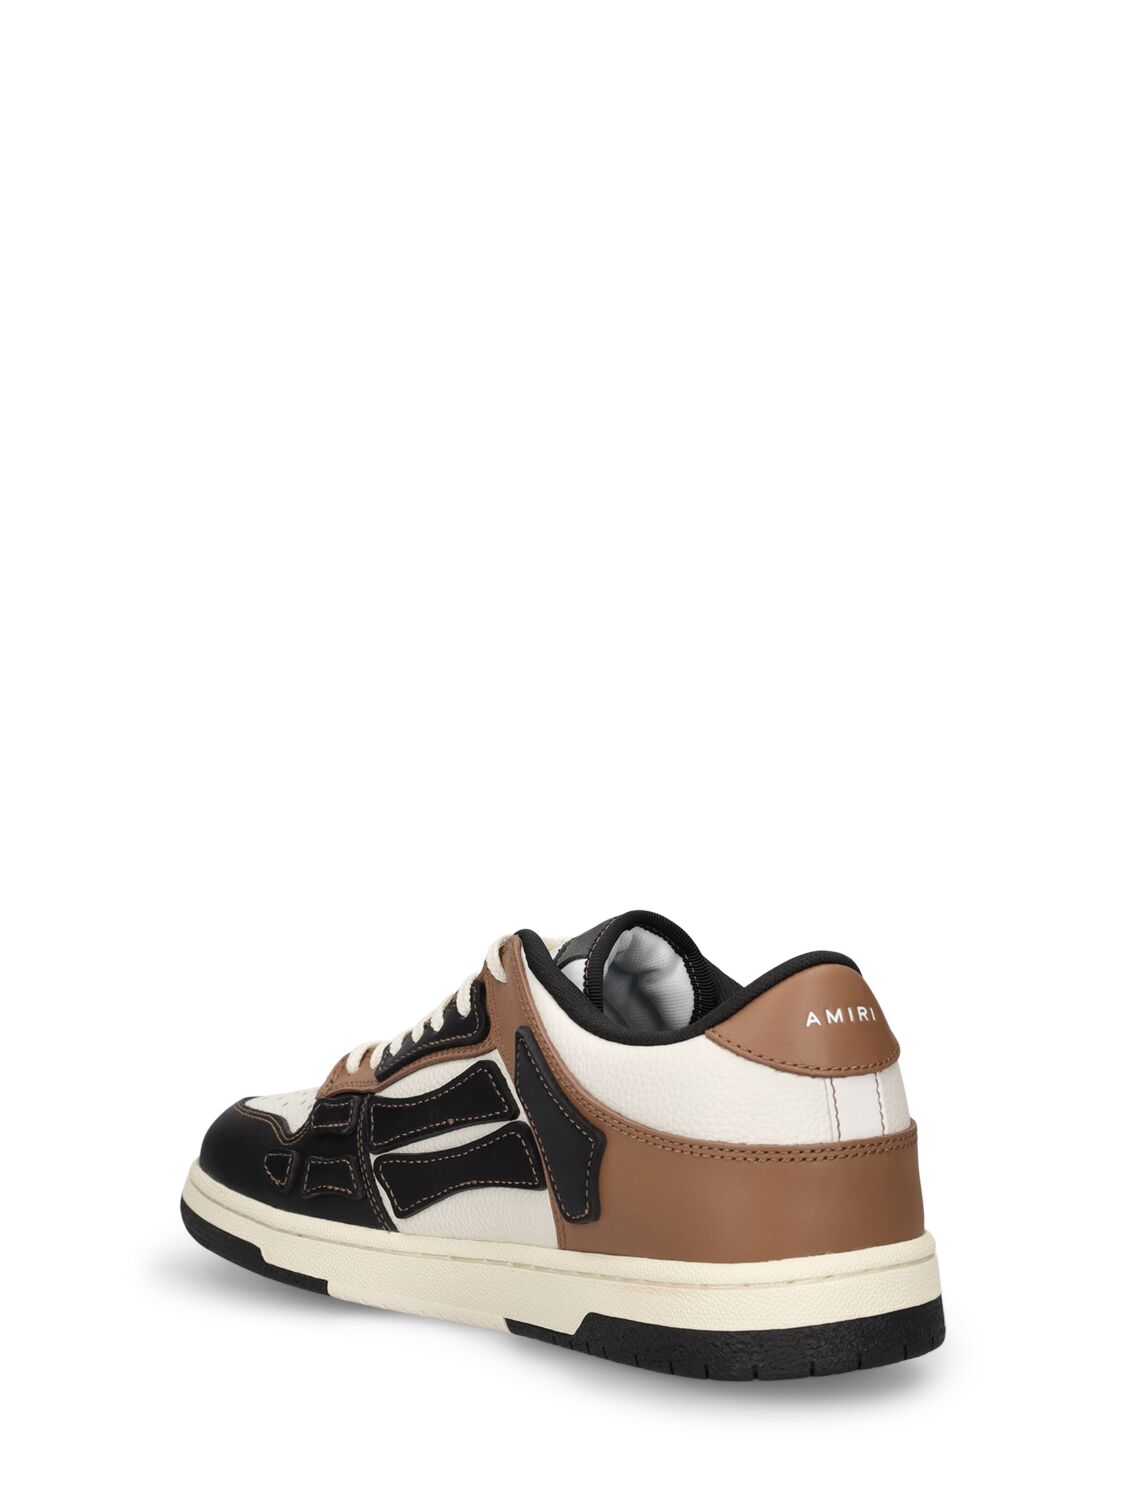 Shop Amiri Skel Top Leather Low Top Sneakers In Black,brown